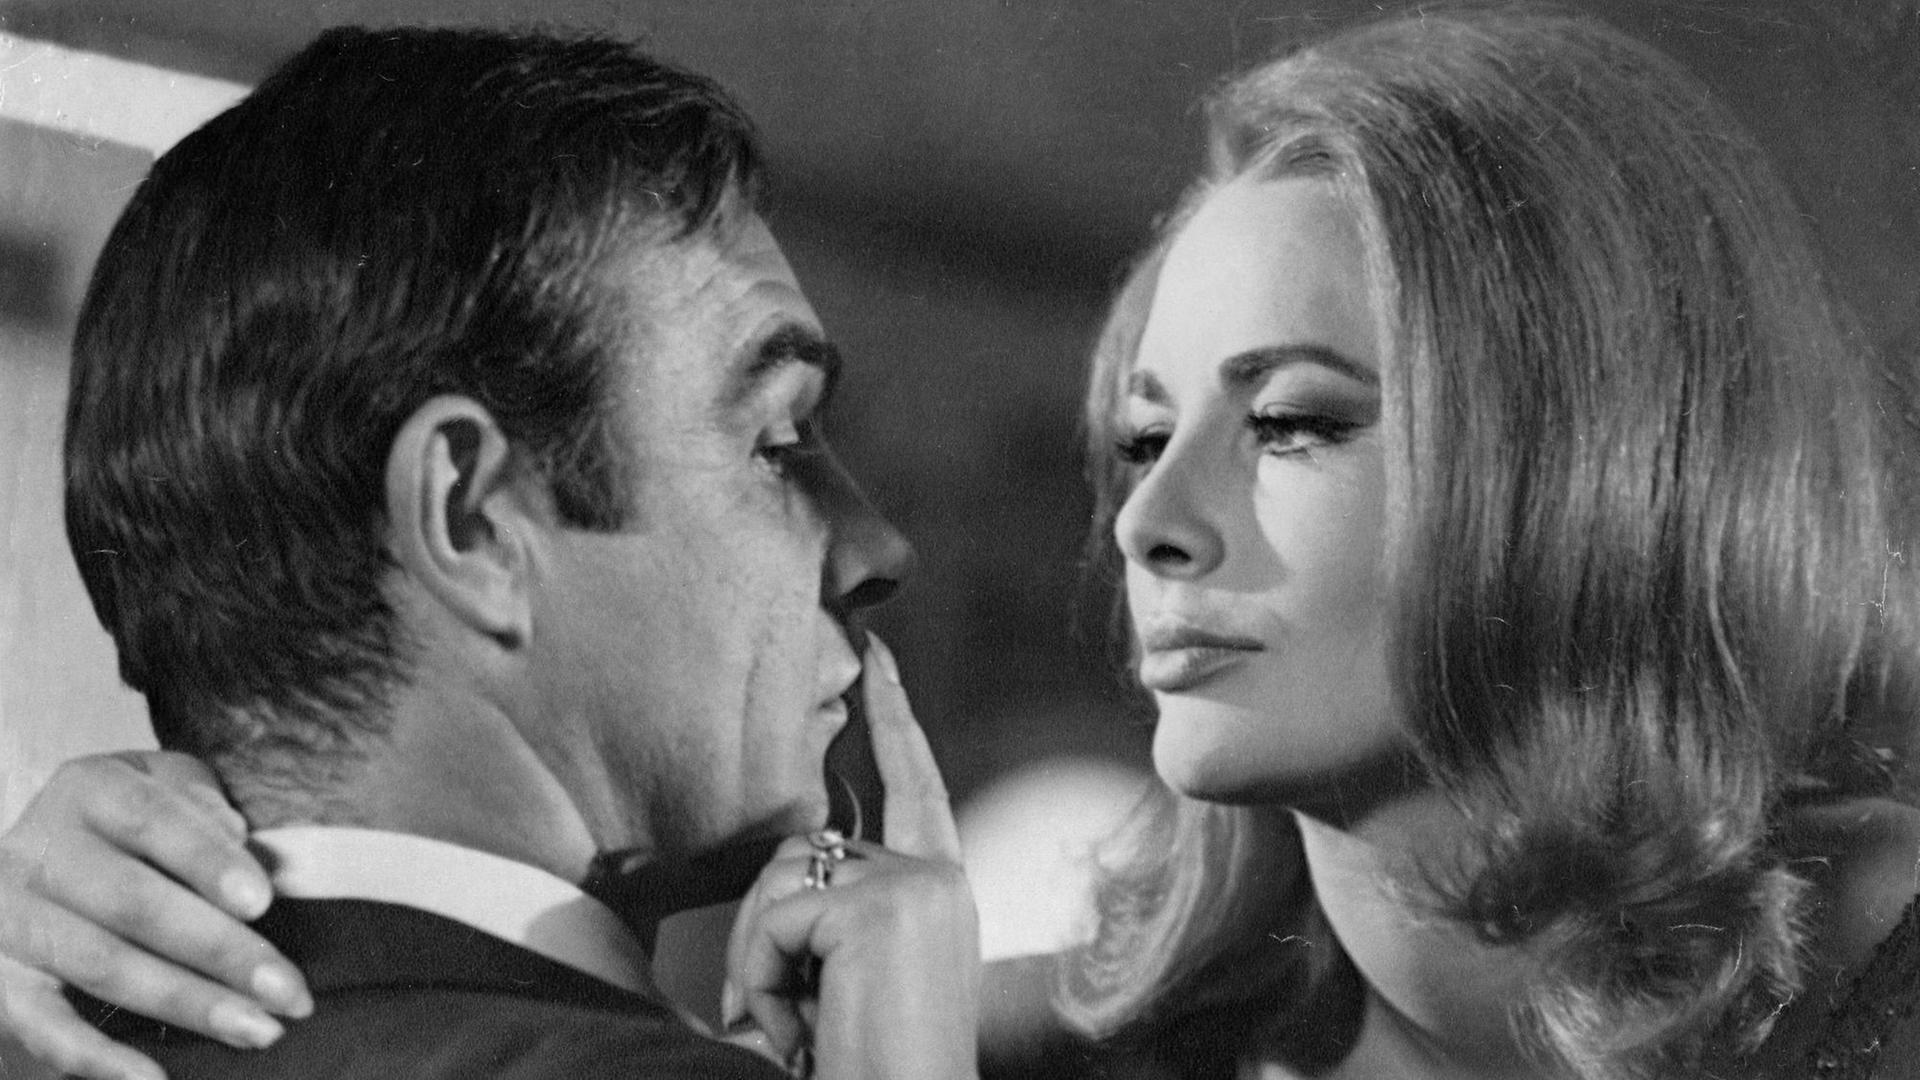 Karin Dor und Sean Connery in einer Szene des James-Bond-Films "Man lebt nur zweimal"